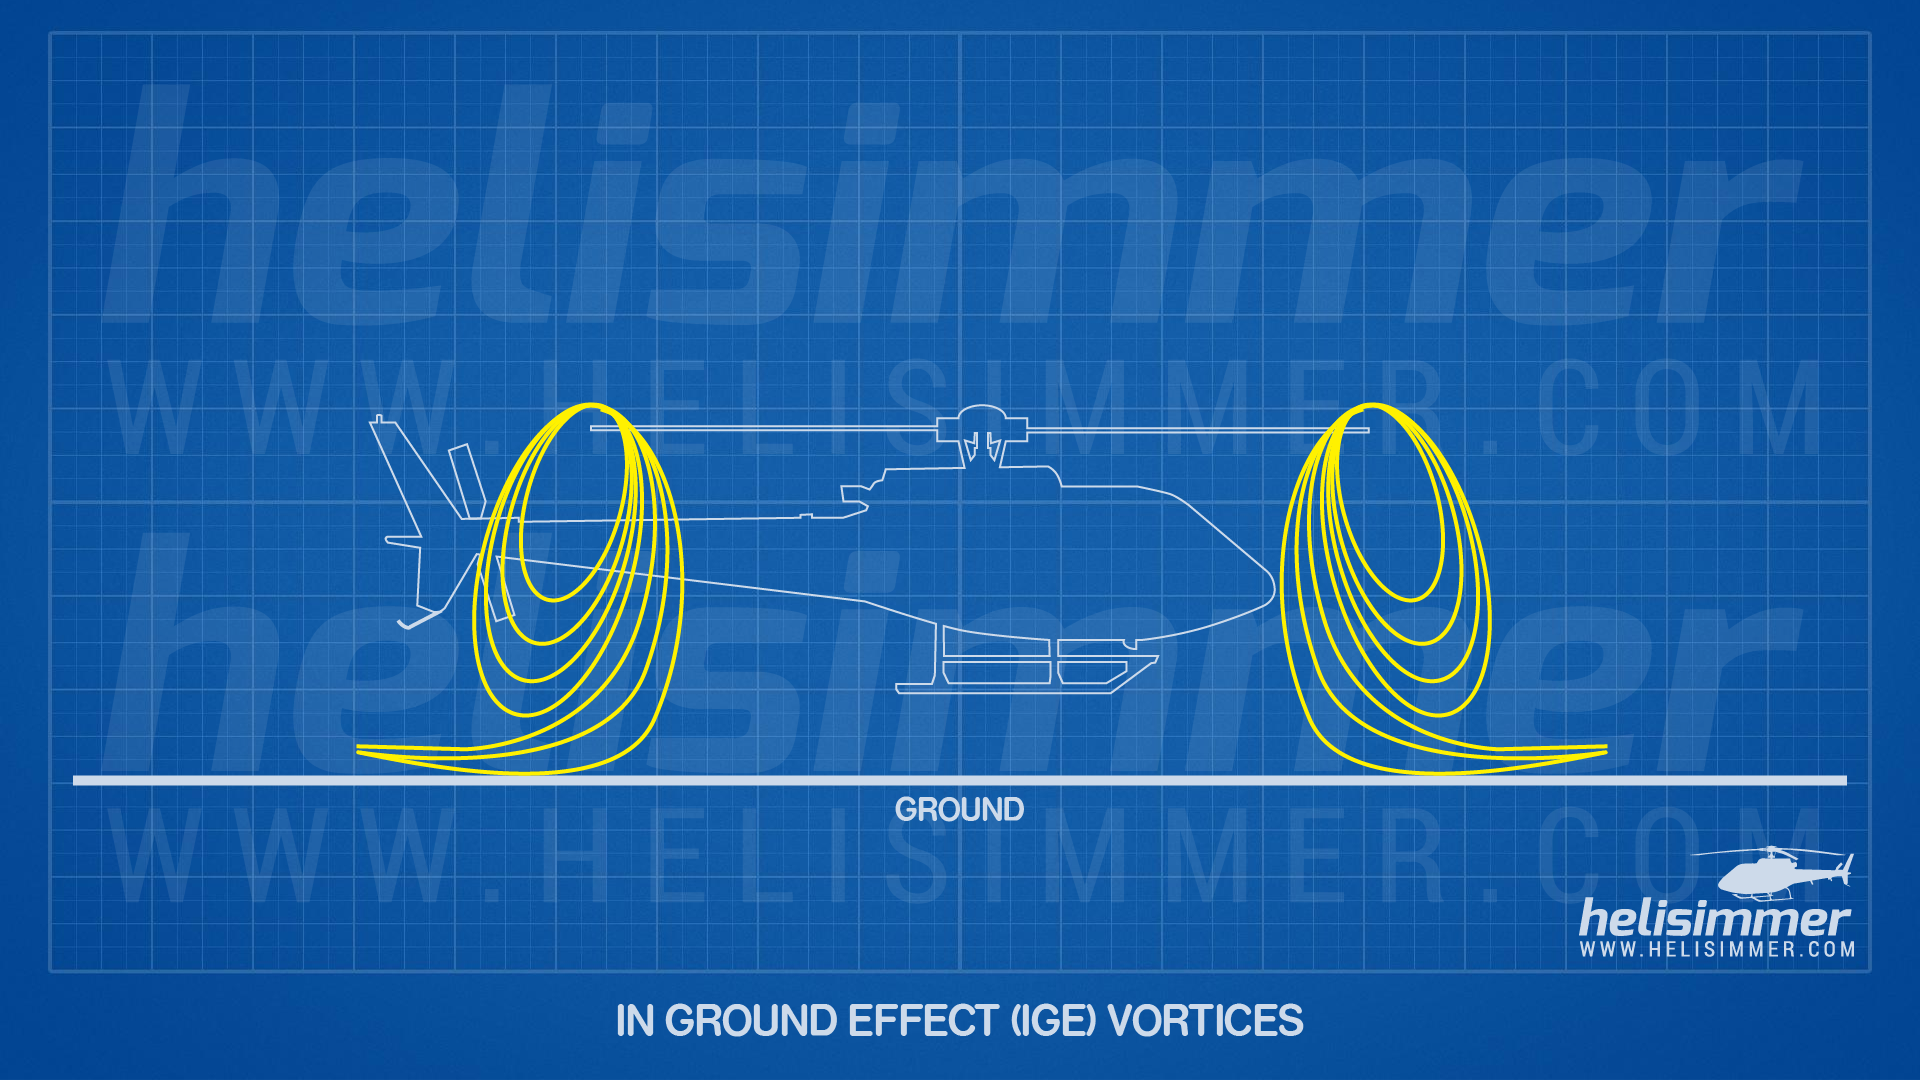 Ground effect - vortices in ground effect